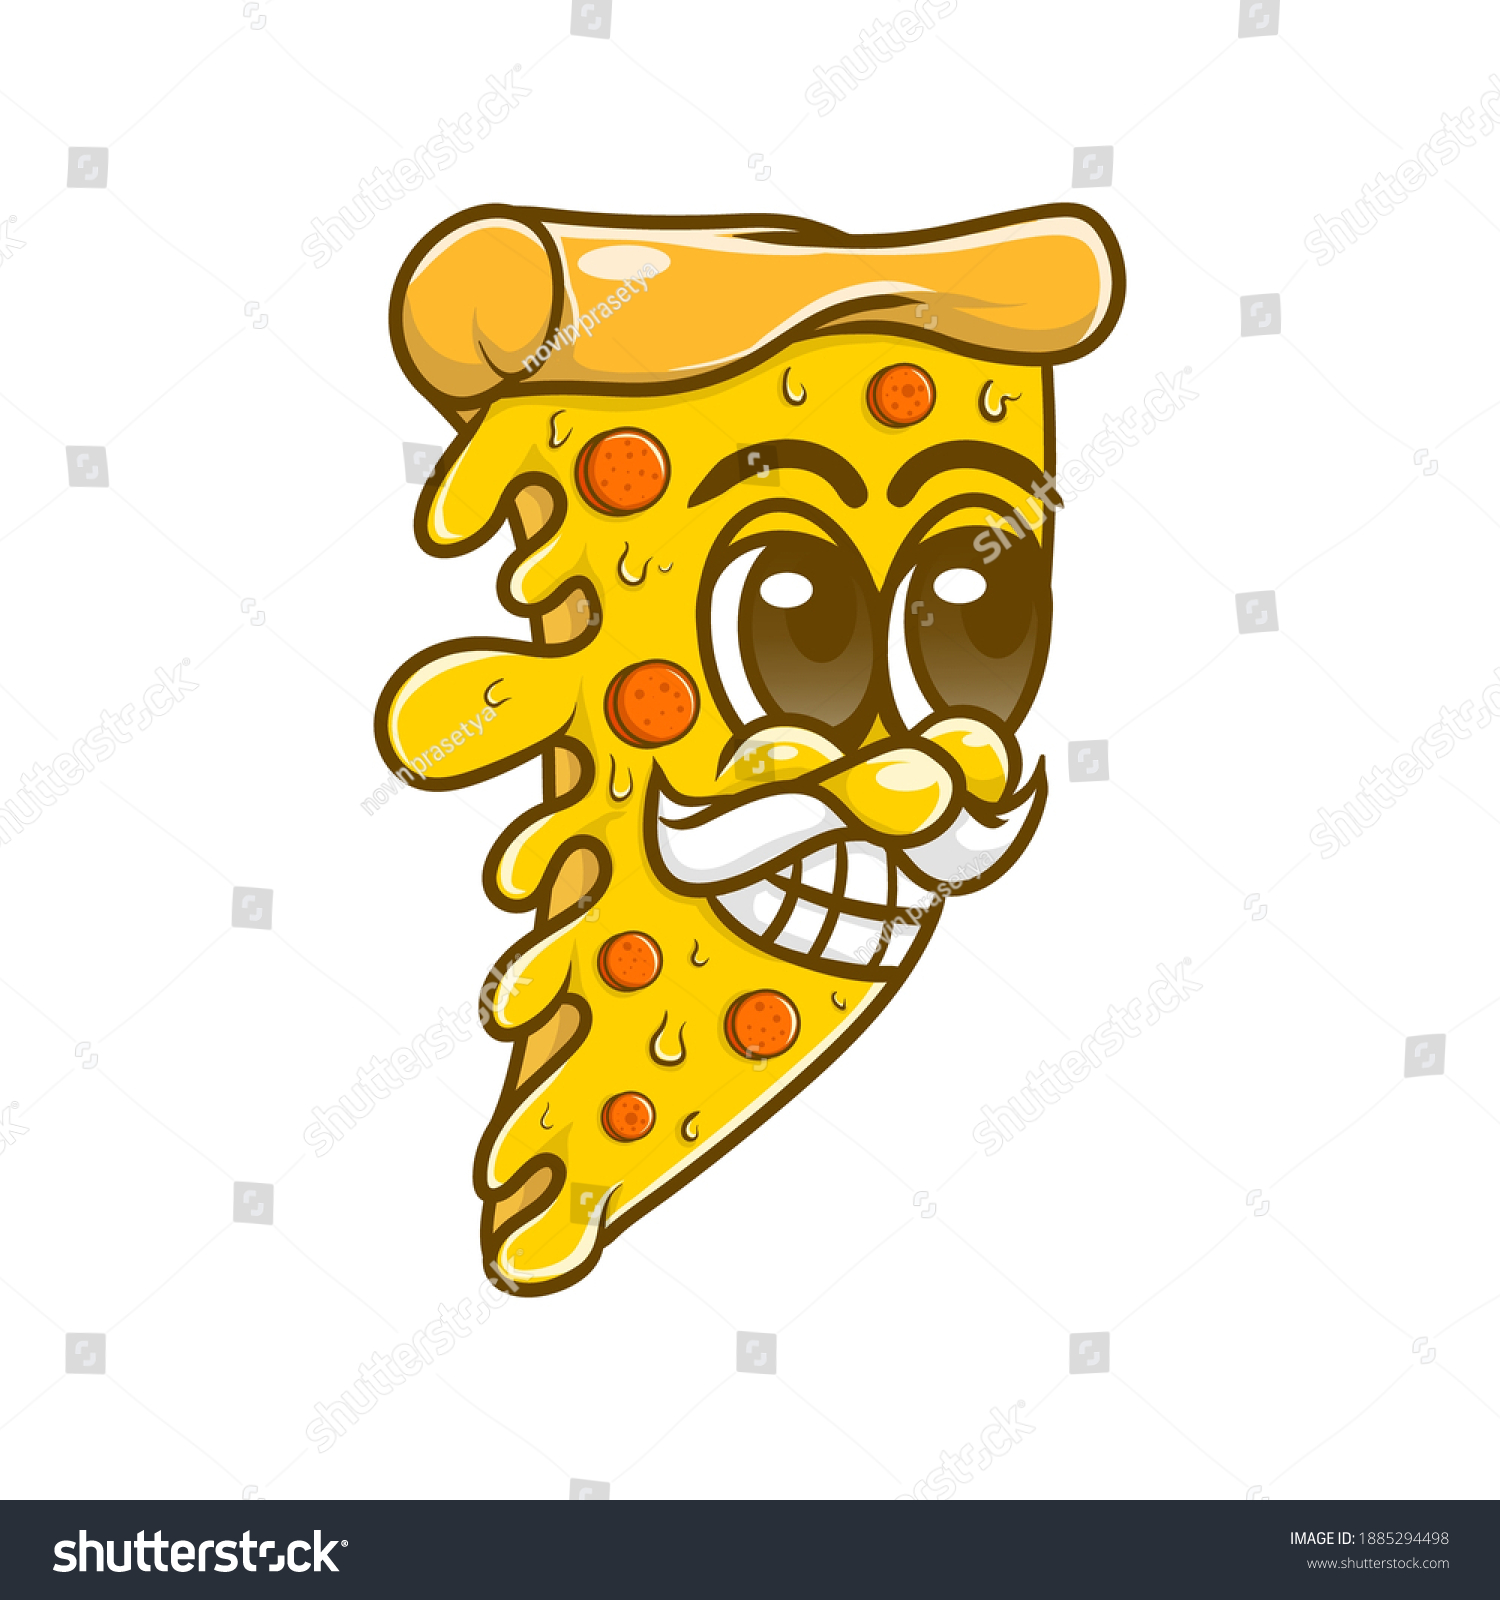 SVG of desain ilustrasi karakter piza bahan karakter svg